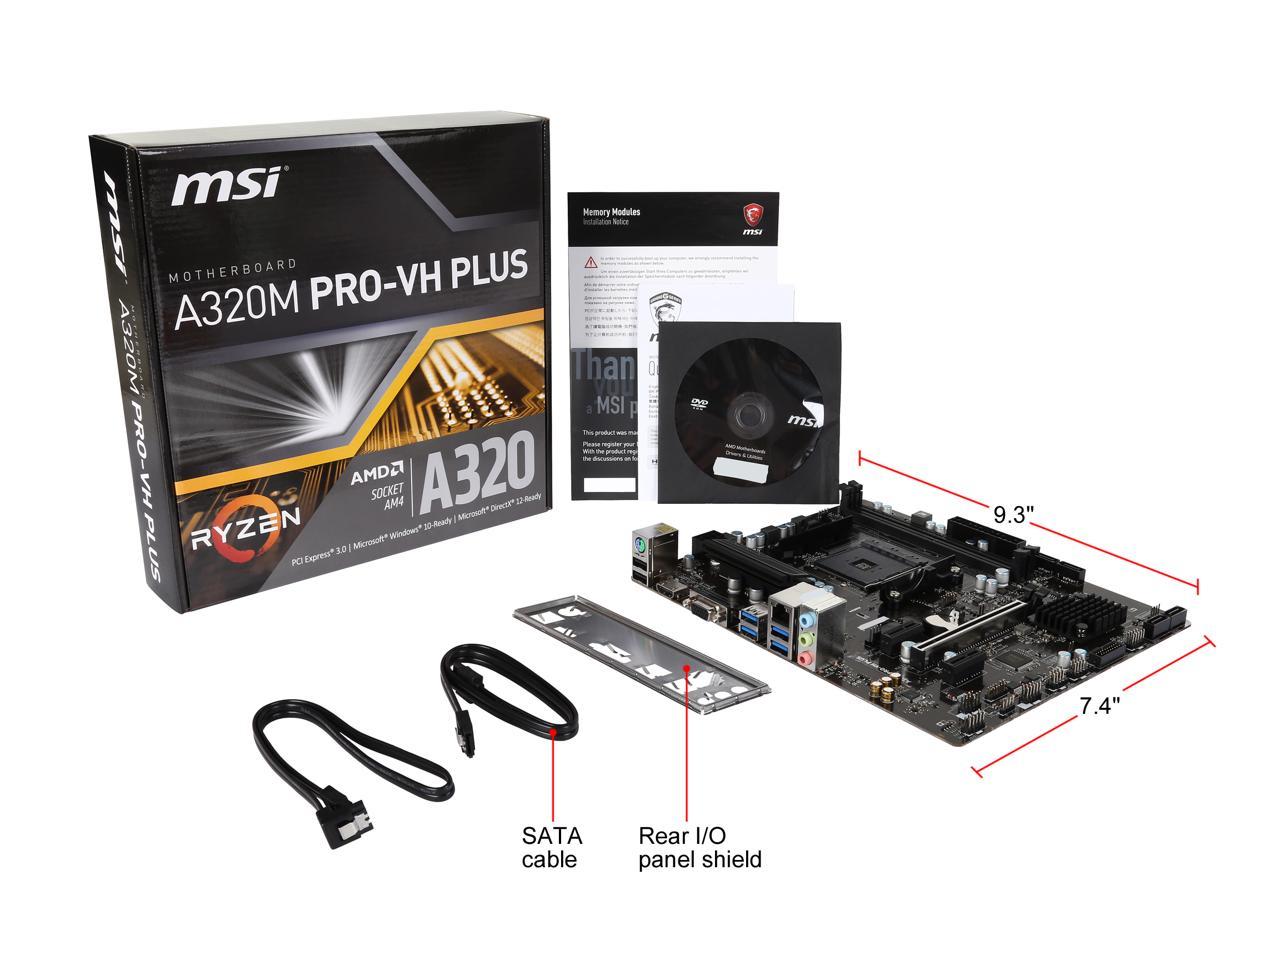 MSI a320m Pro VH MSI. MSI a320m Pro-VH Plus. MSI am4 a320 a320m Pro-VH. MSI a320m Pro-VH am4 ddr4 3200(OC) HDMI VGA M.2 USB3.2 MATX. Msi a520m a pro драйвера